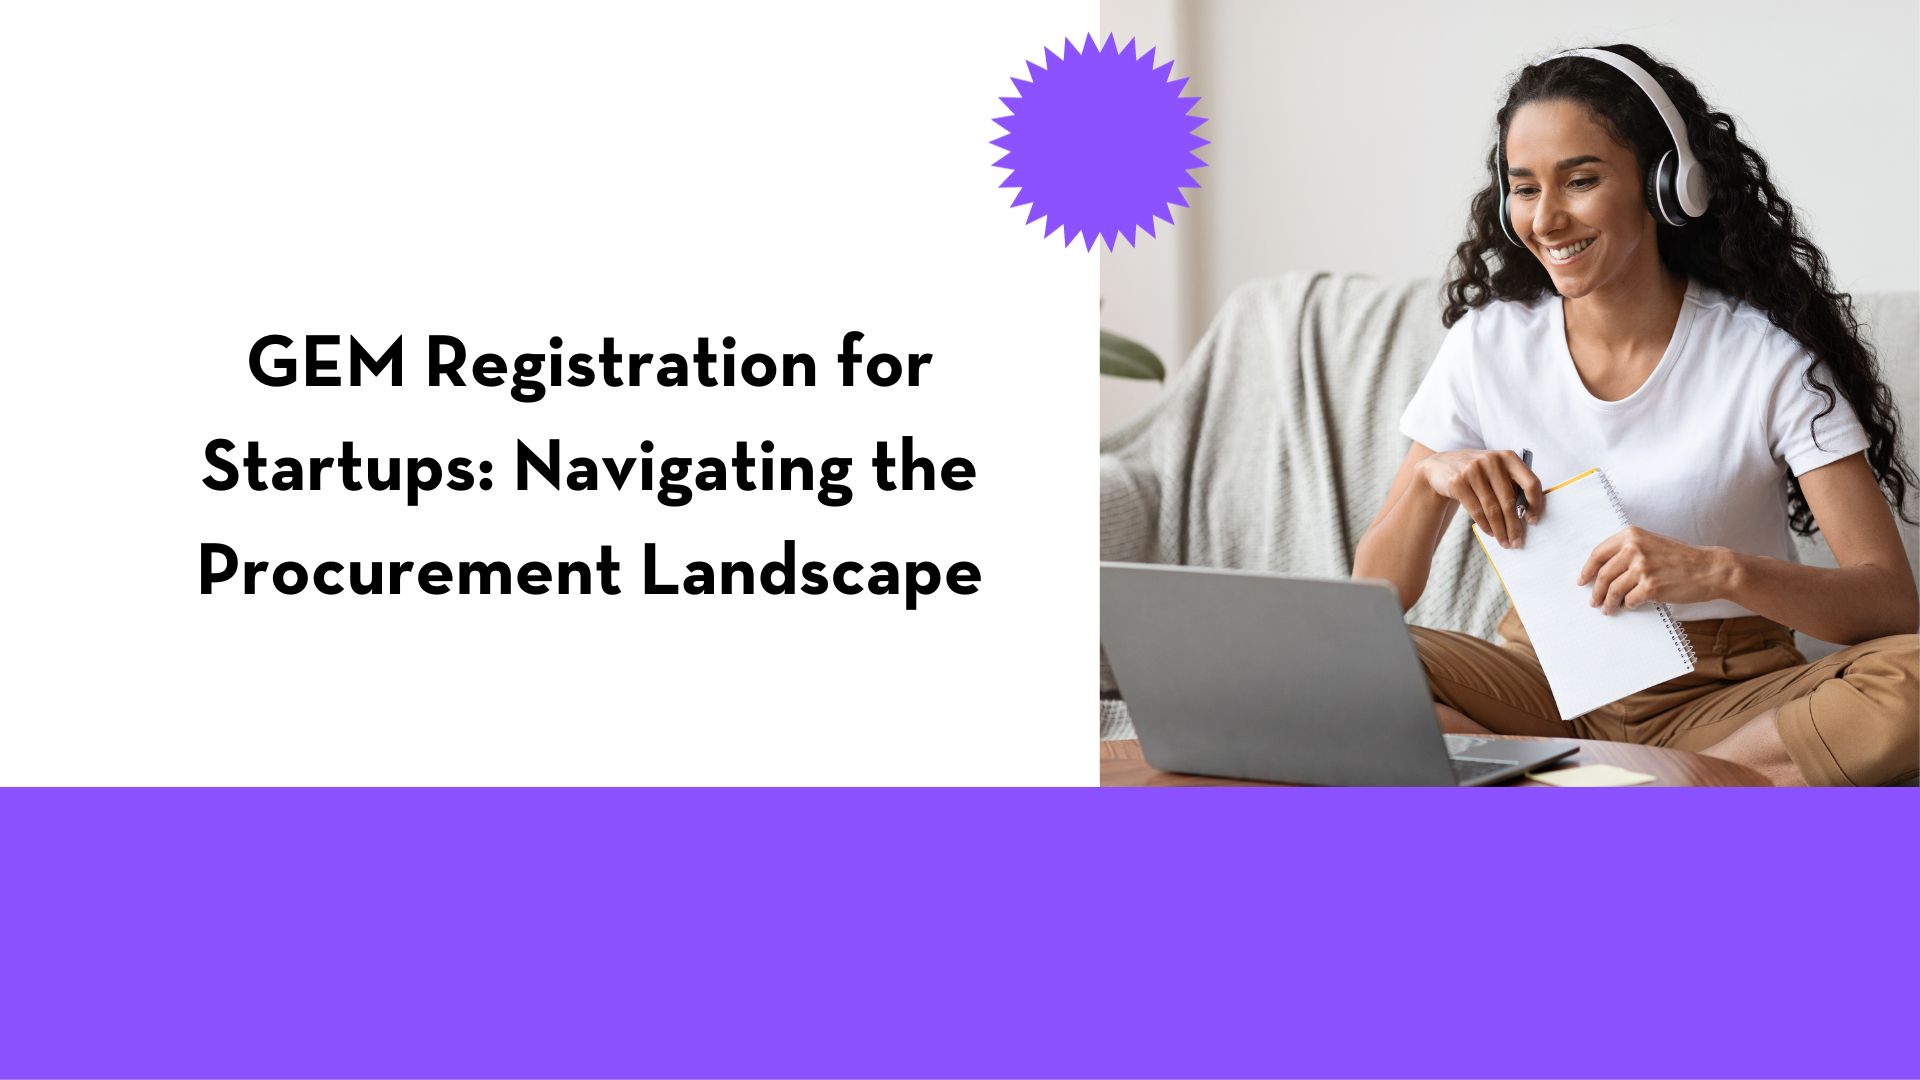 GEM Registration for Startups: Navigating the Procurement Landscape